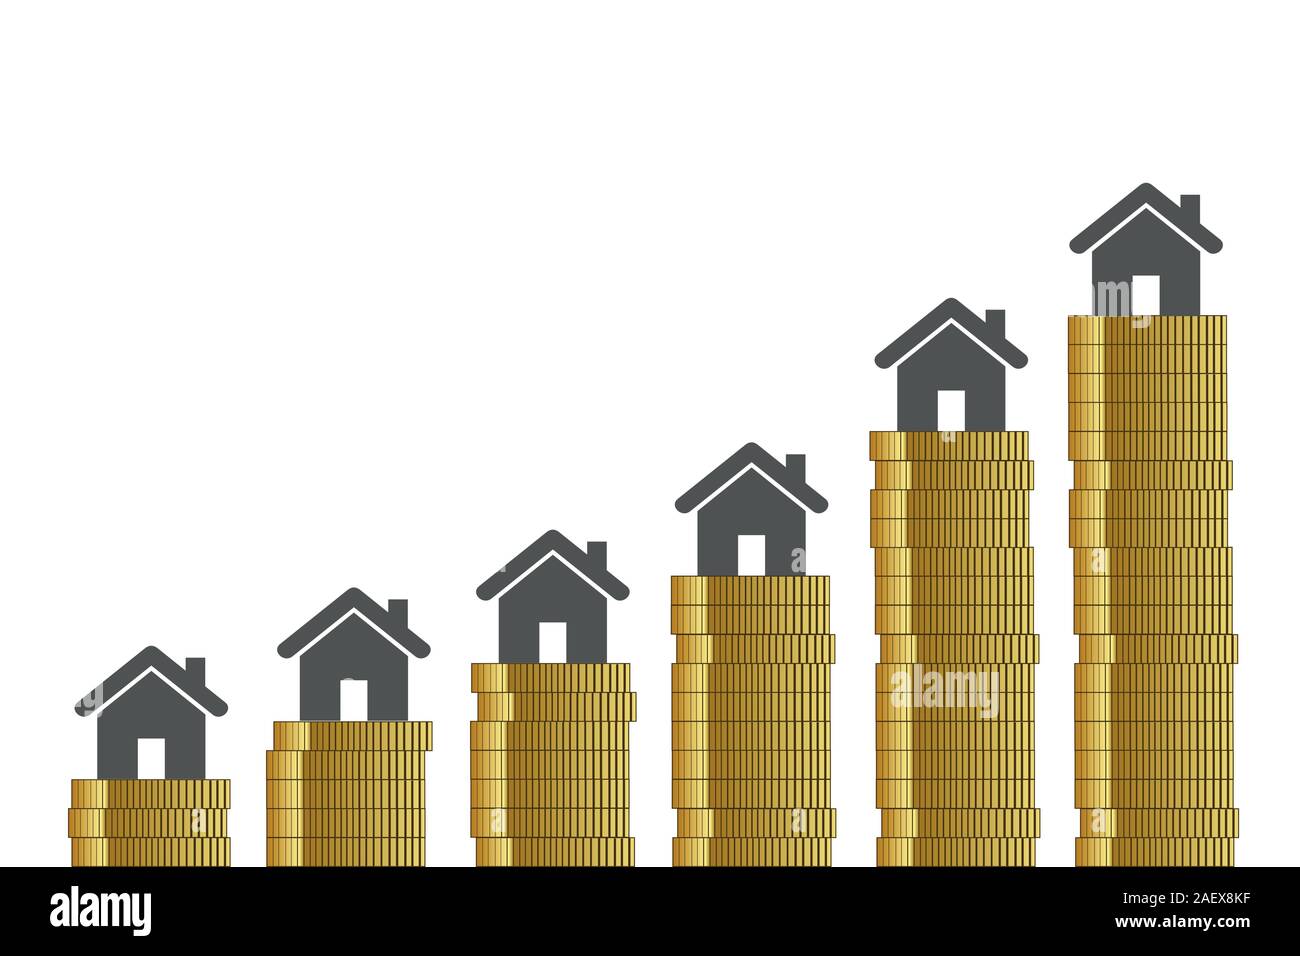 Hohe Immobilienpreise goldenen Münzen auf weißem Hintergrund Vektor-illustration EPS 10. Stock Vektor